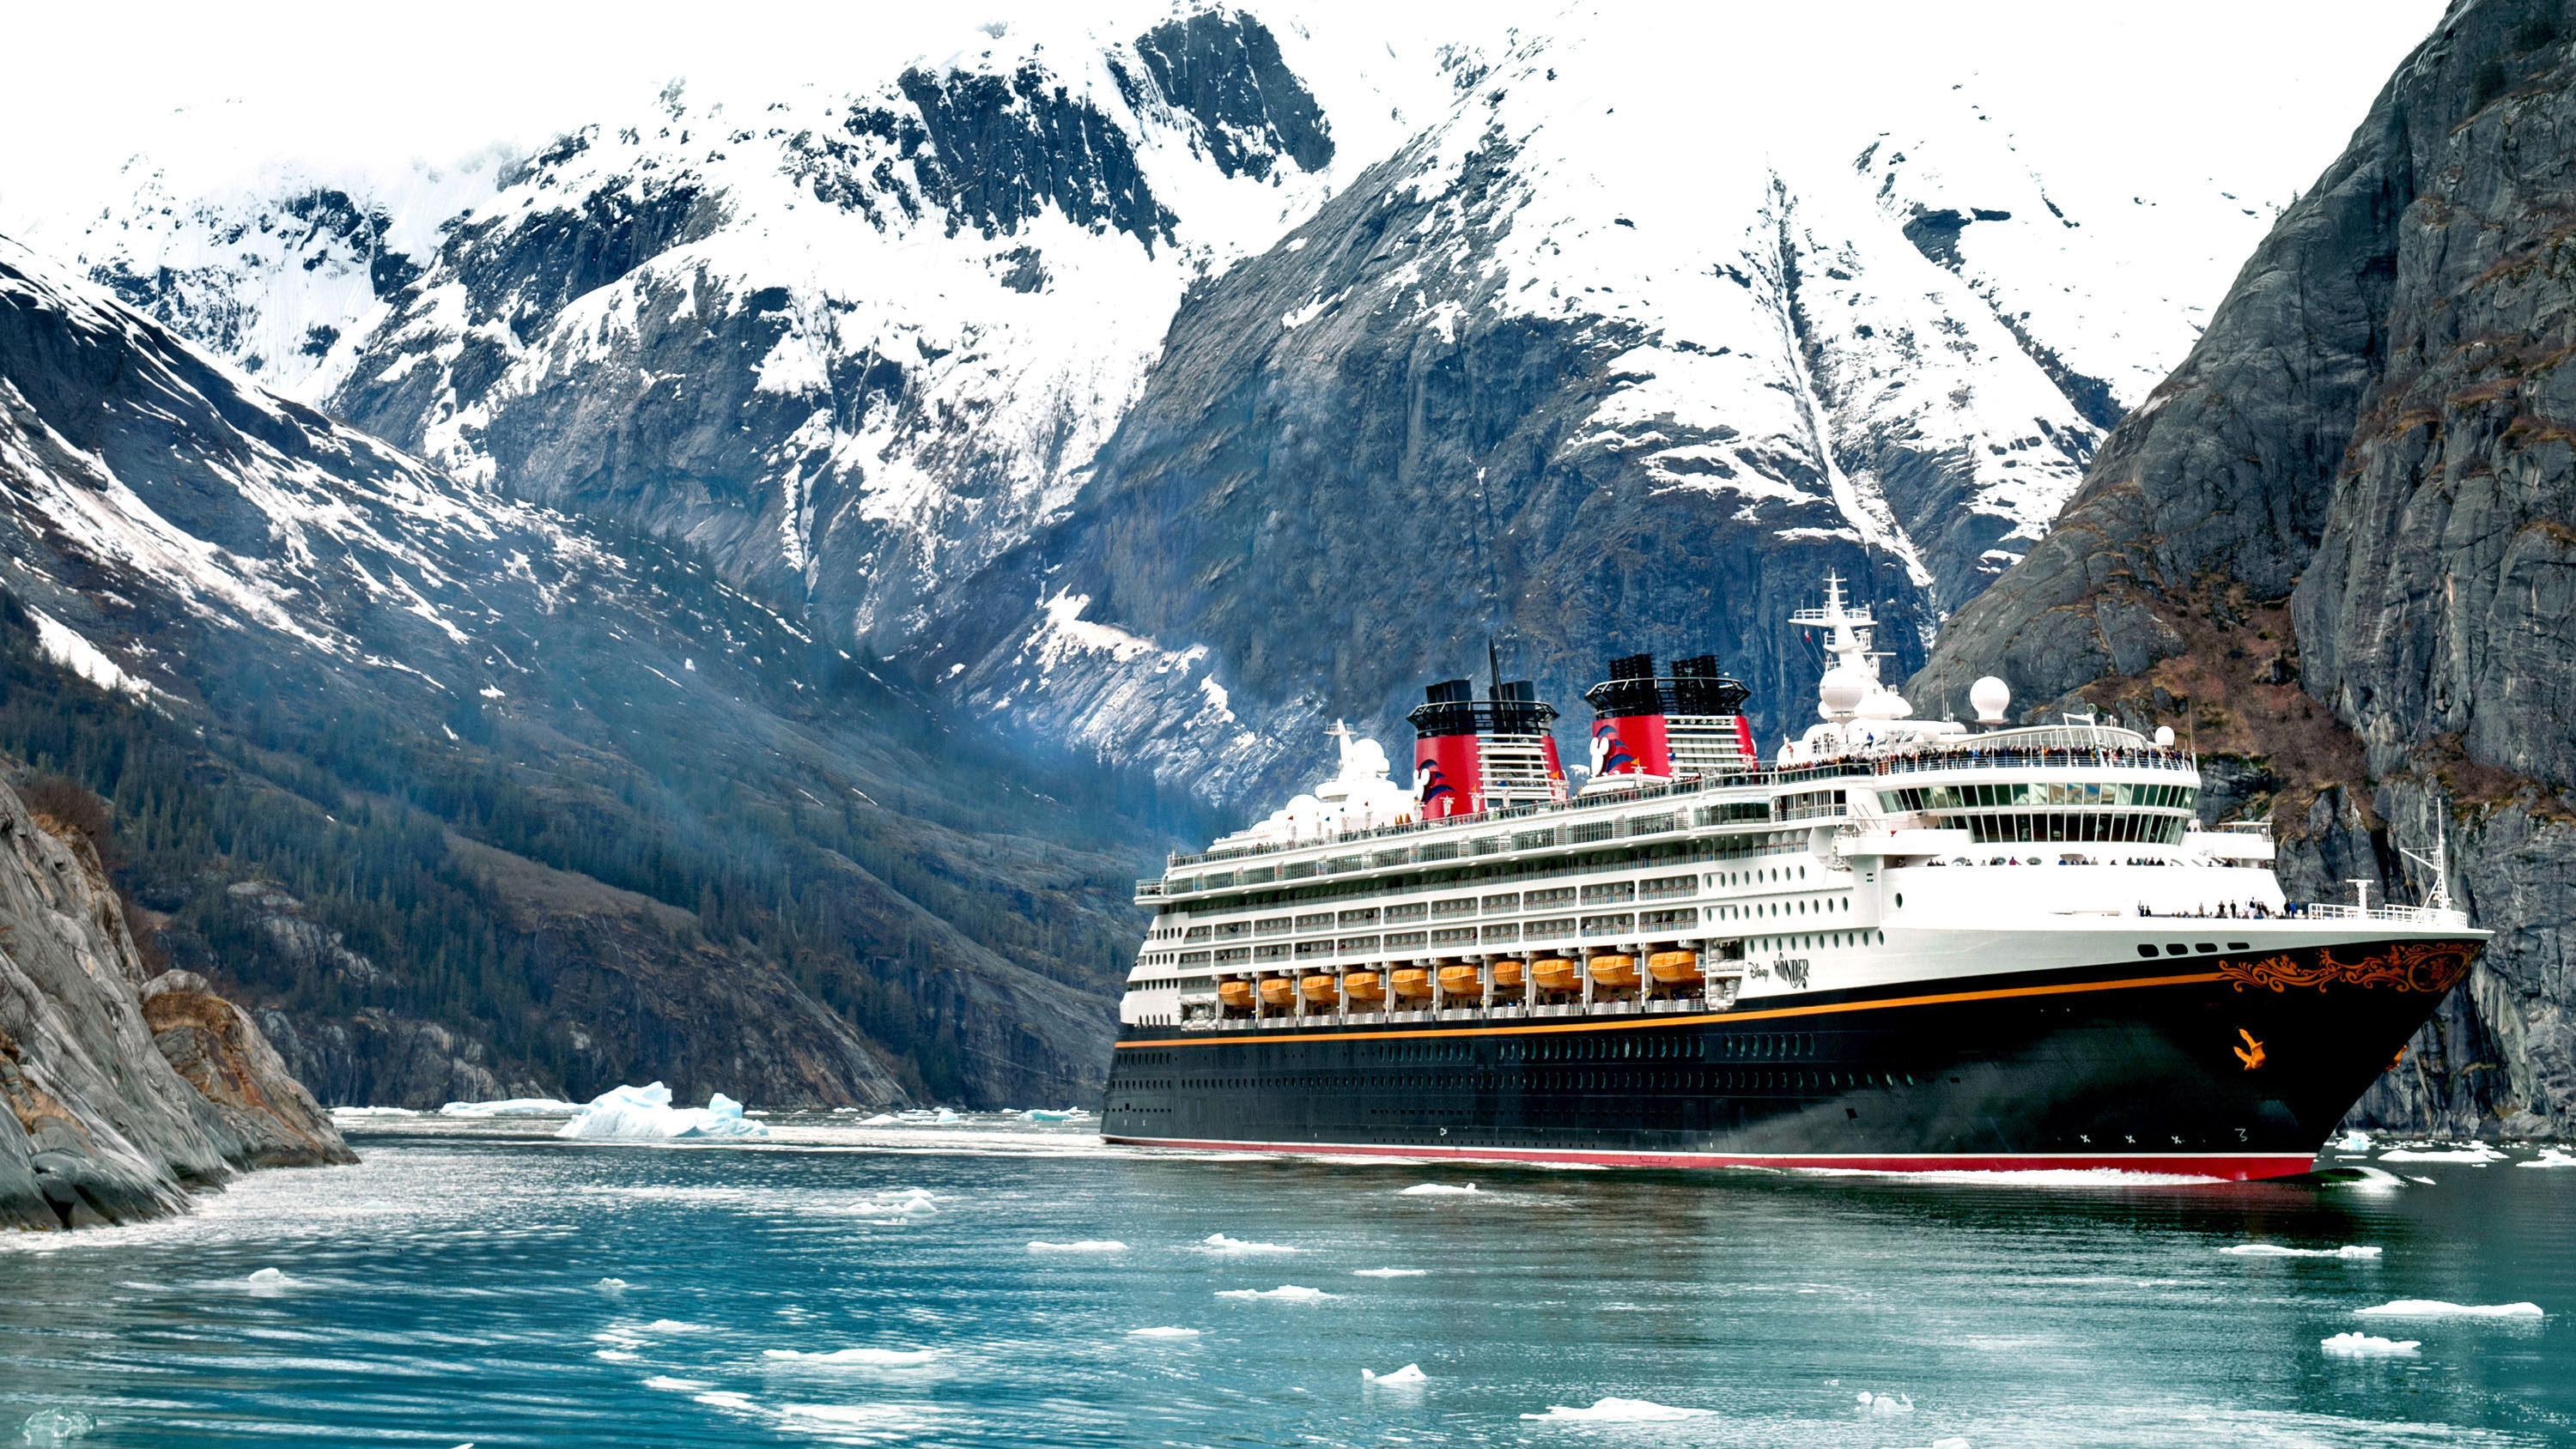 La temporada de cruceros Canadá y Alaska 2020 se cancela - Coronavirus y Cruceros: restricciones y cancelaciones - Cruisses and Boats Forum